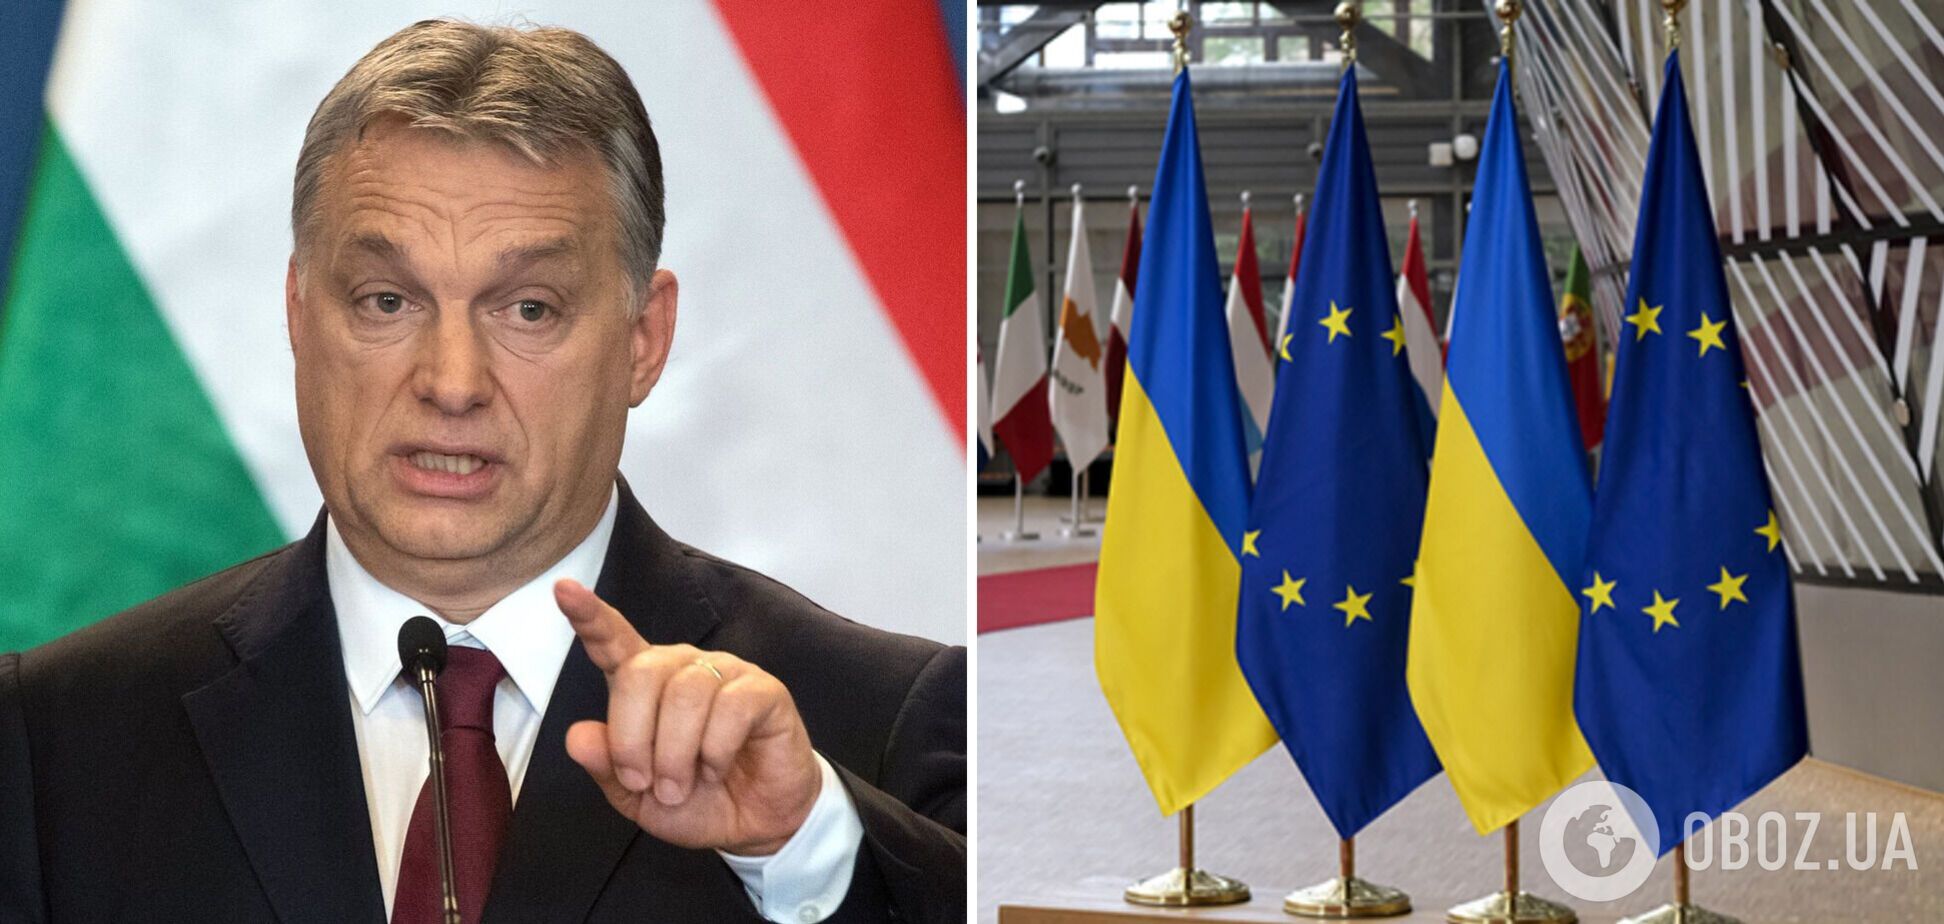 Друг Путина Орбан приближает ЕС к ‘пропасти’ из-за негативного отношения к Украине – Politico